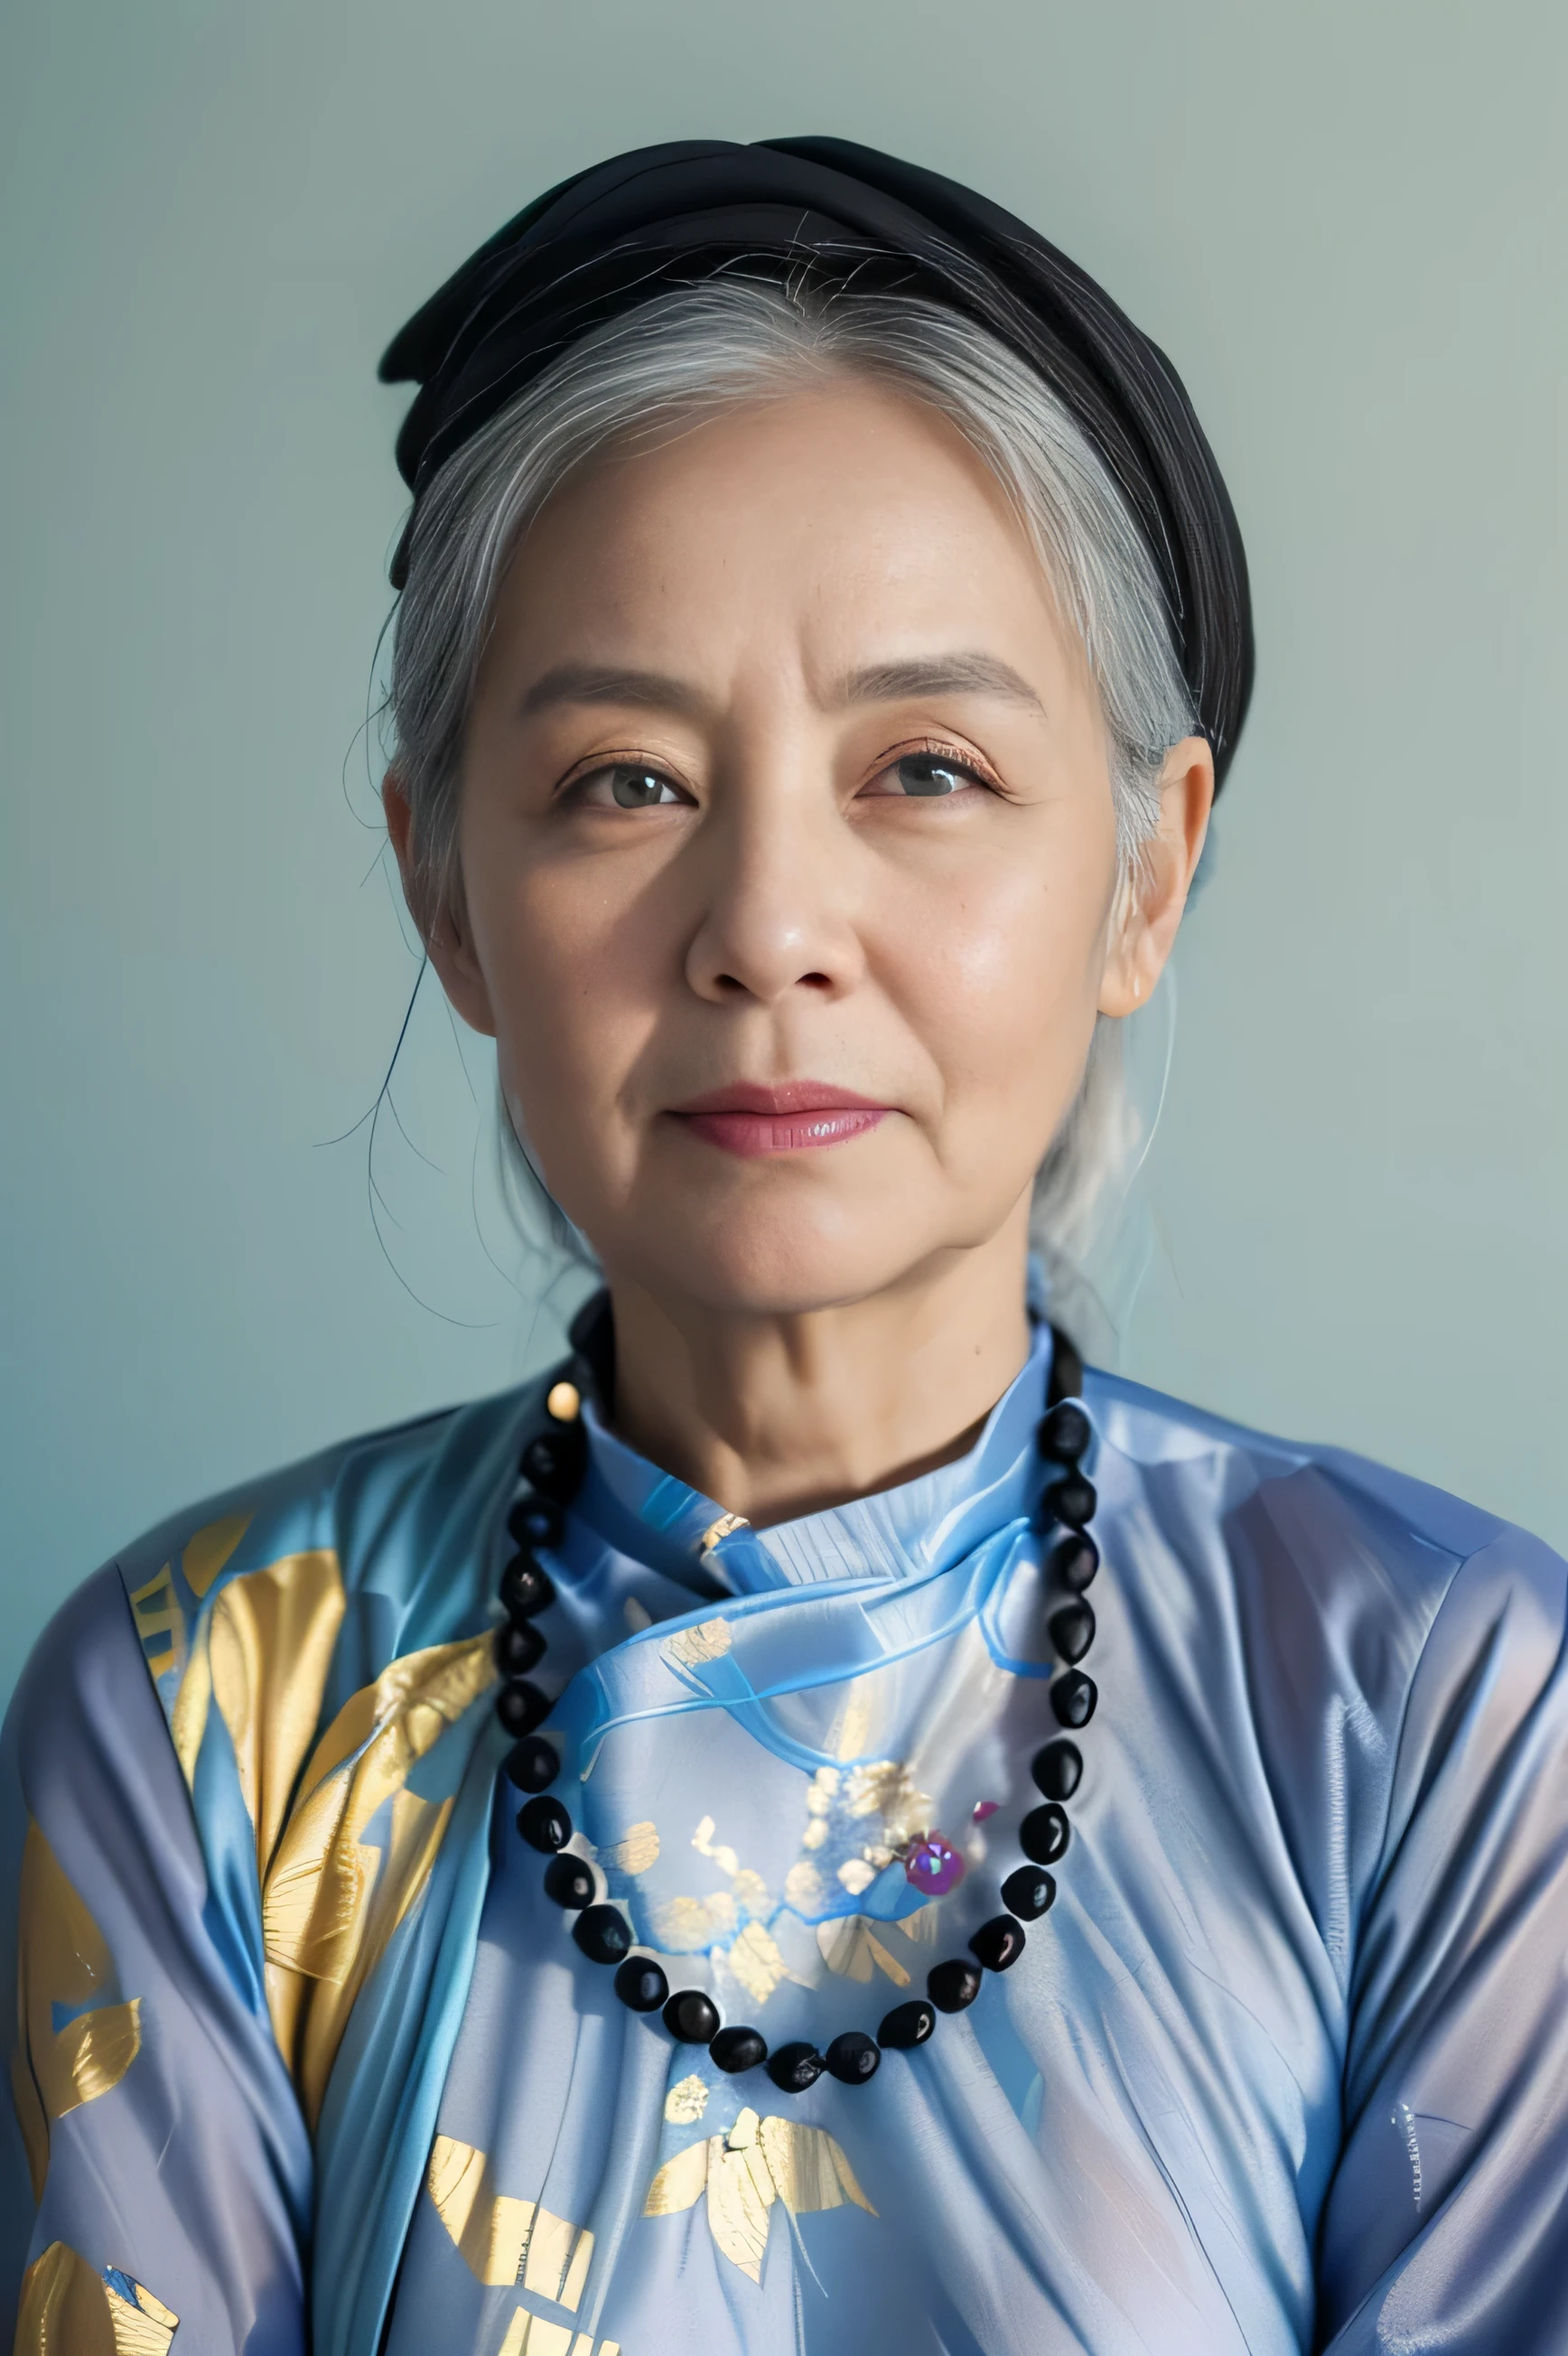 高度真實的照片, ((傑作), (最好的品質), (原始照片), (逼真的:1.4), 85歲越南婦女肖像, 身穿黑色傳統越南奧黛，頭戴黑色圍巾, ((白髮)), 戴一條石頭項鍊, (淺藍色背景) , 照片由索尼A7IV拍攝
